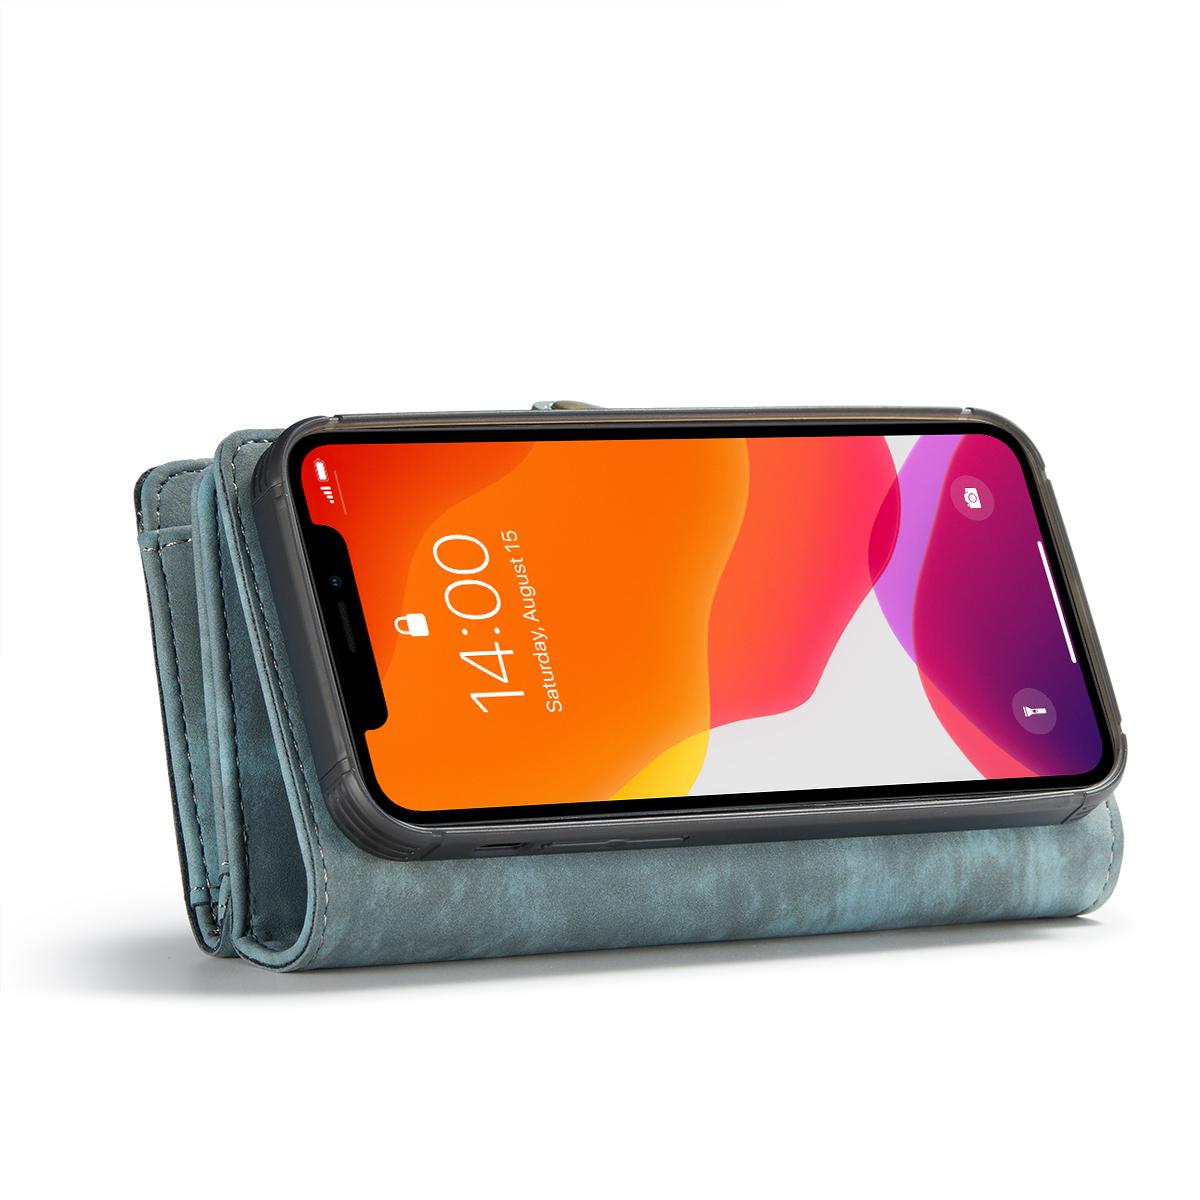 Multi-slot Portemonnaie-Hülle iPhone 12 Mini Blau